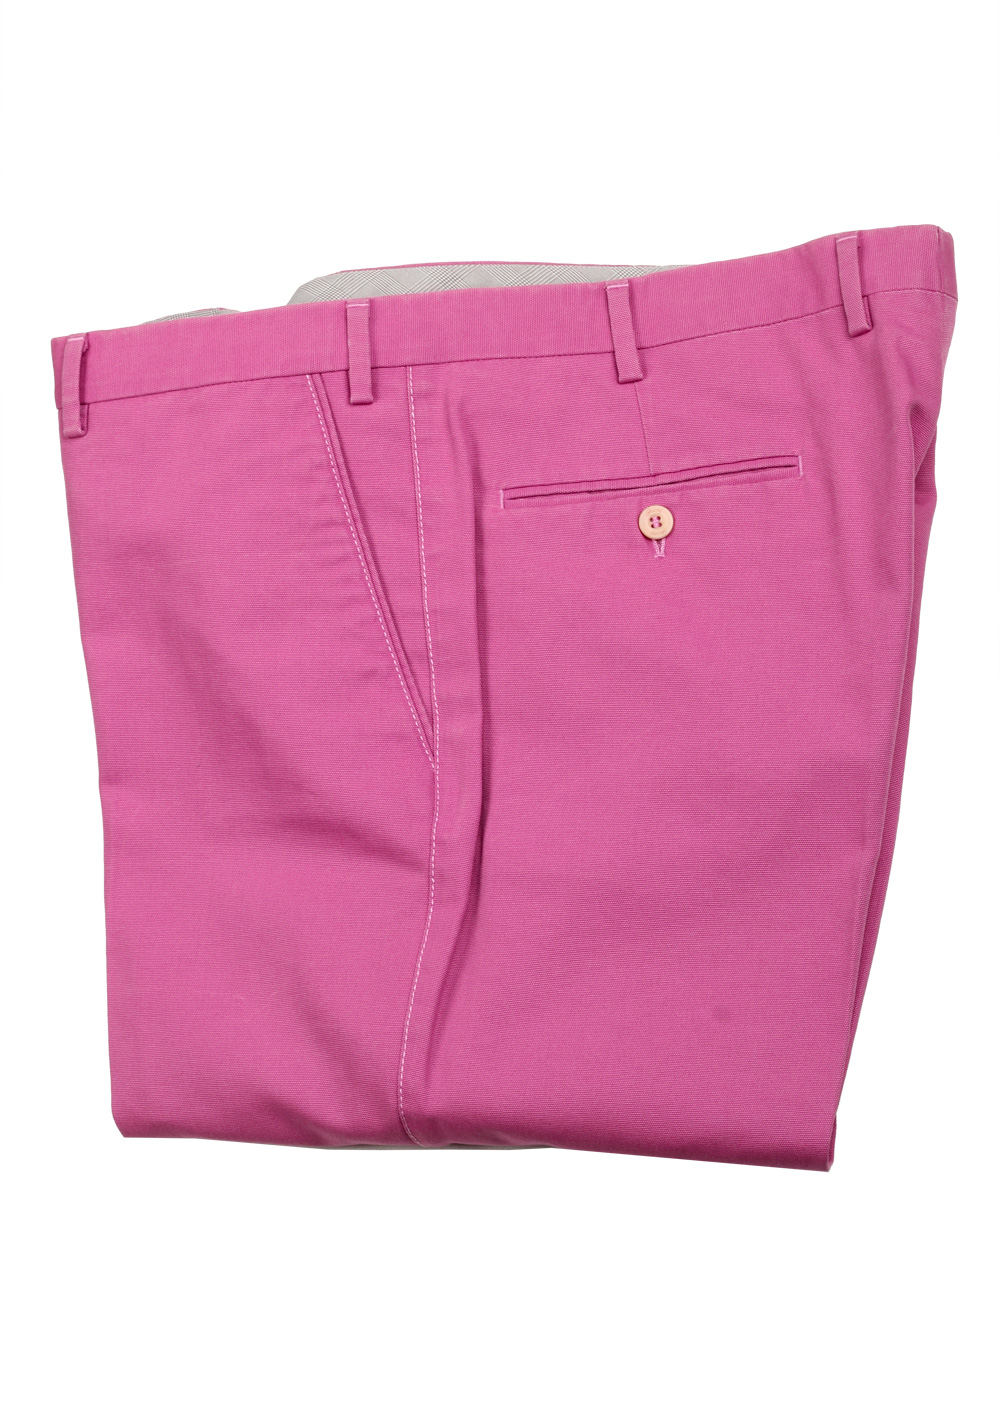 Brioni Pink Cotton Trousers | Costume Limité